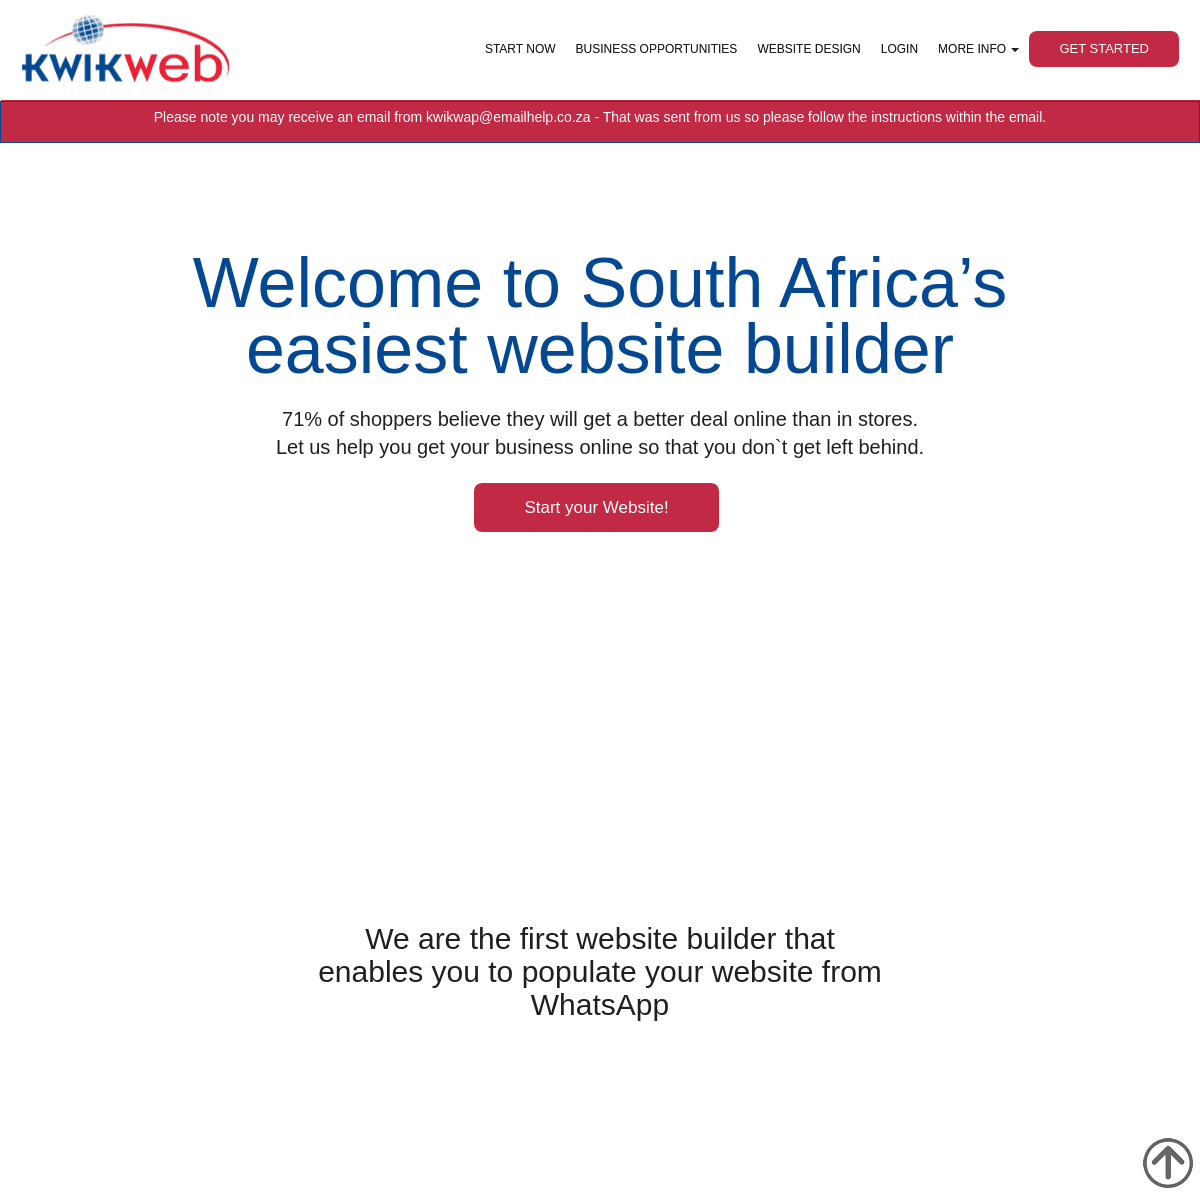 A complete backup of https://kwikwap.co.za